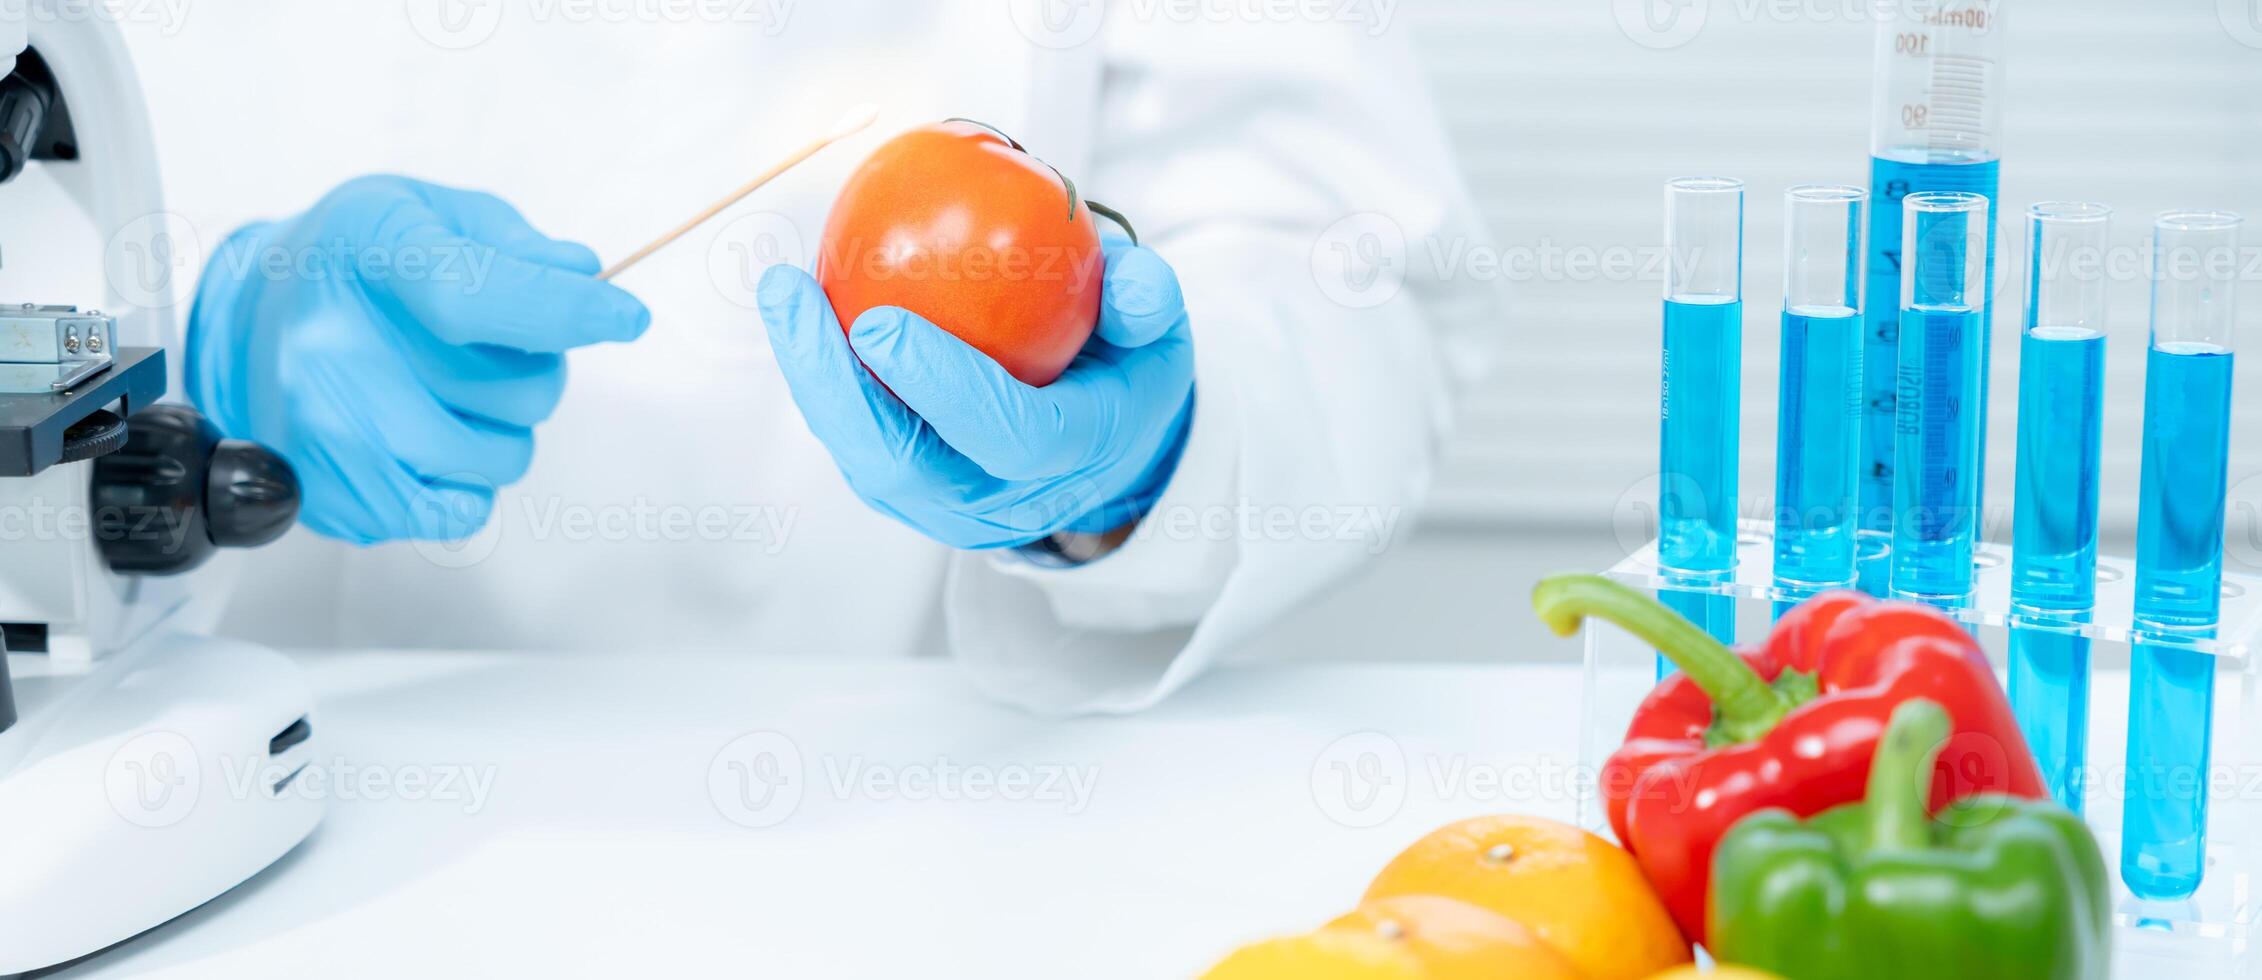 wissenschaftler überprüfen chemische lebensmittelrückstände im labor. Kontrollexperten prüfen die Qualität von Obst und Gemüse. labor, gefahren, rohs, verbotene substanzen finden, kontaminieren, mikroskop, mikrobiologe foto